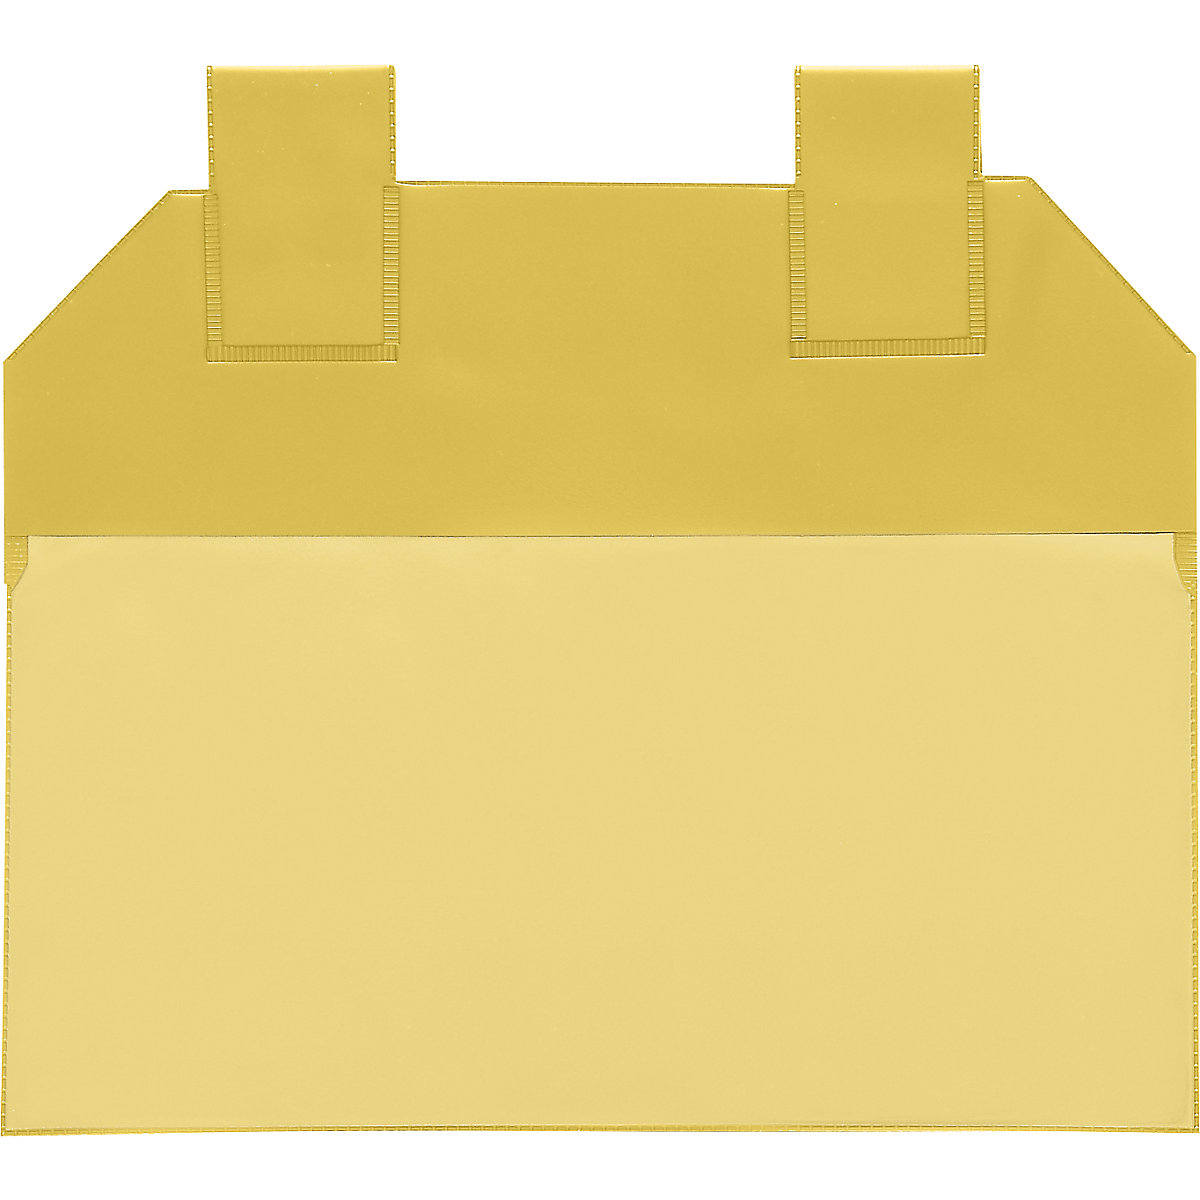 Gitterboxtaschen, VE 50 Stk, für Papierformat DIN A6, gelb-5